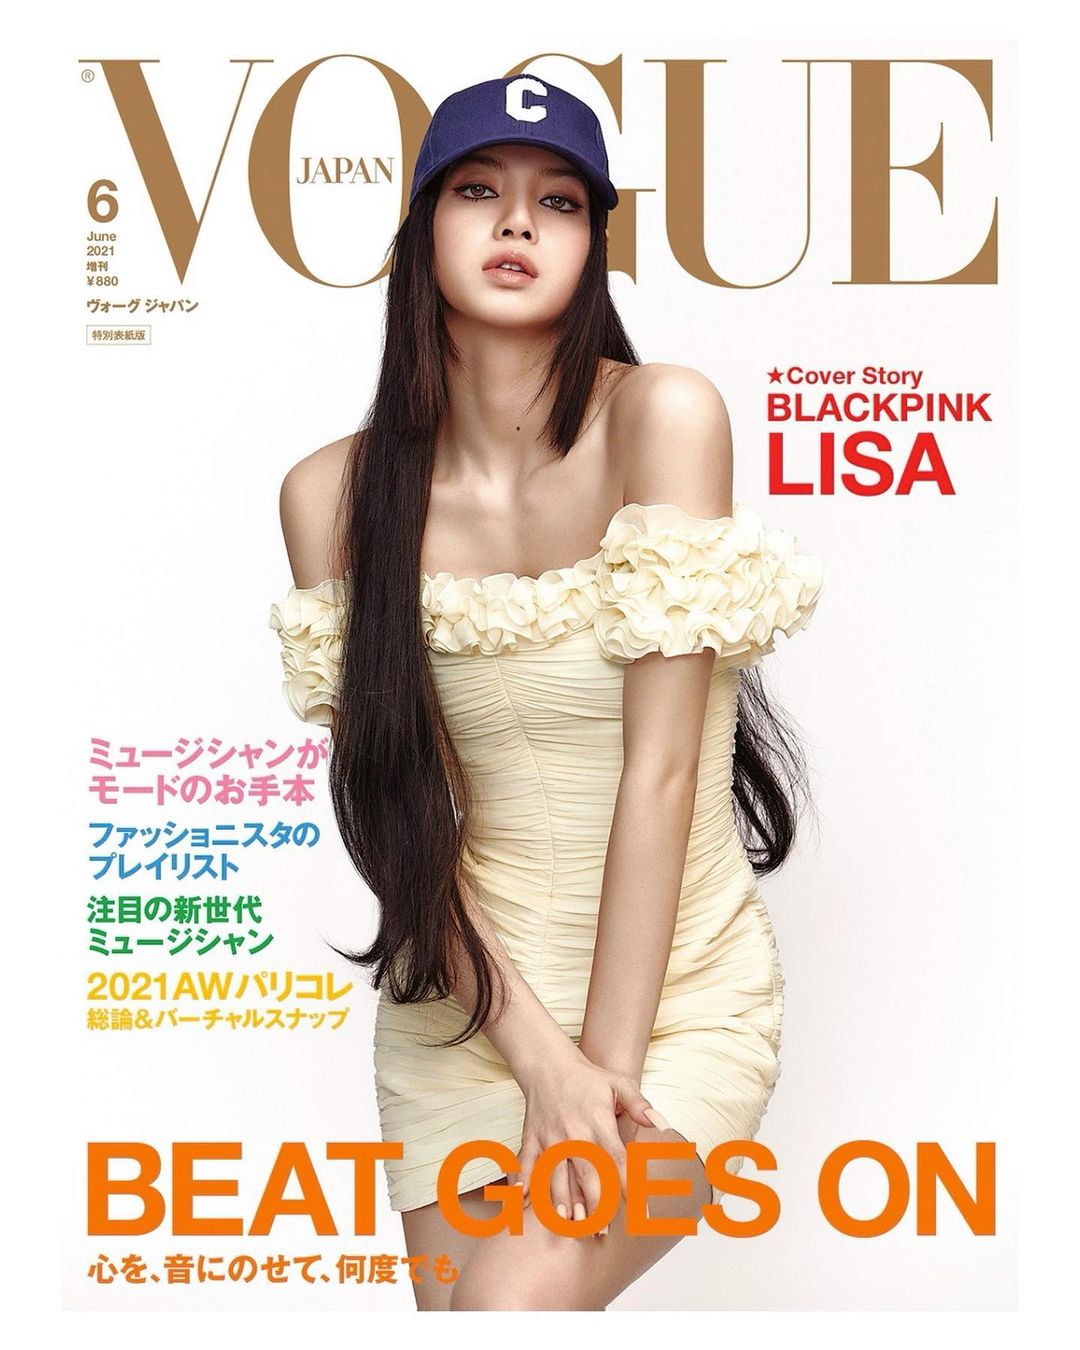 Lisa khoe khéo vòng 1 trong chiếc váy trễ vai bó sát của nhà mốt Celine trên bìa tạp chí Vogue Nhật Bản.